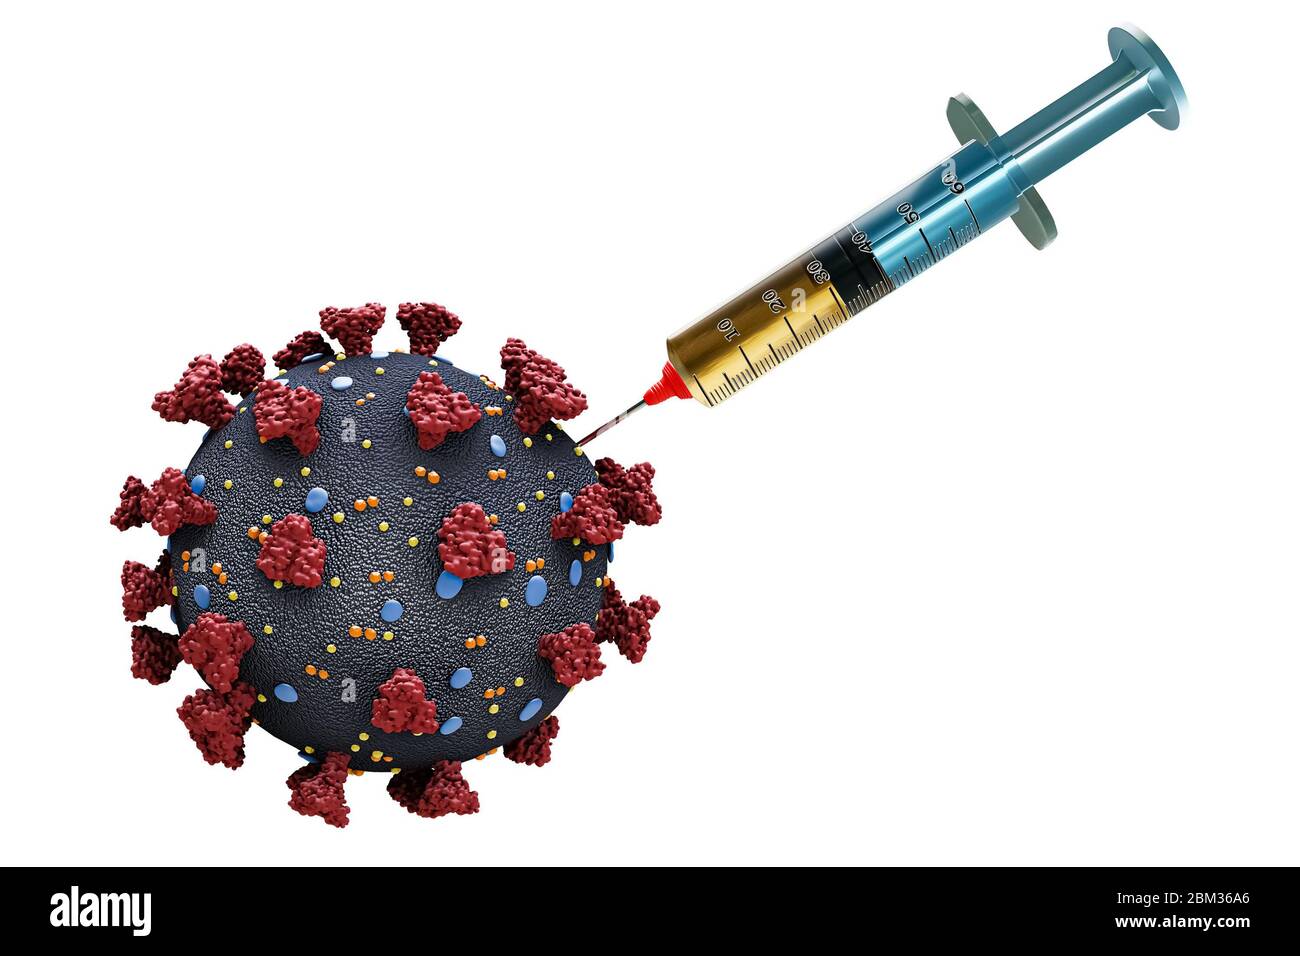 Coronavirus oder Covid Virus Zelle mit einer Spritze oder Nadel, die Medikament in ihr auf einem weißen Hintergrund isoliert. Impfstoff gegen Virusinfektion Stockfoto